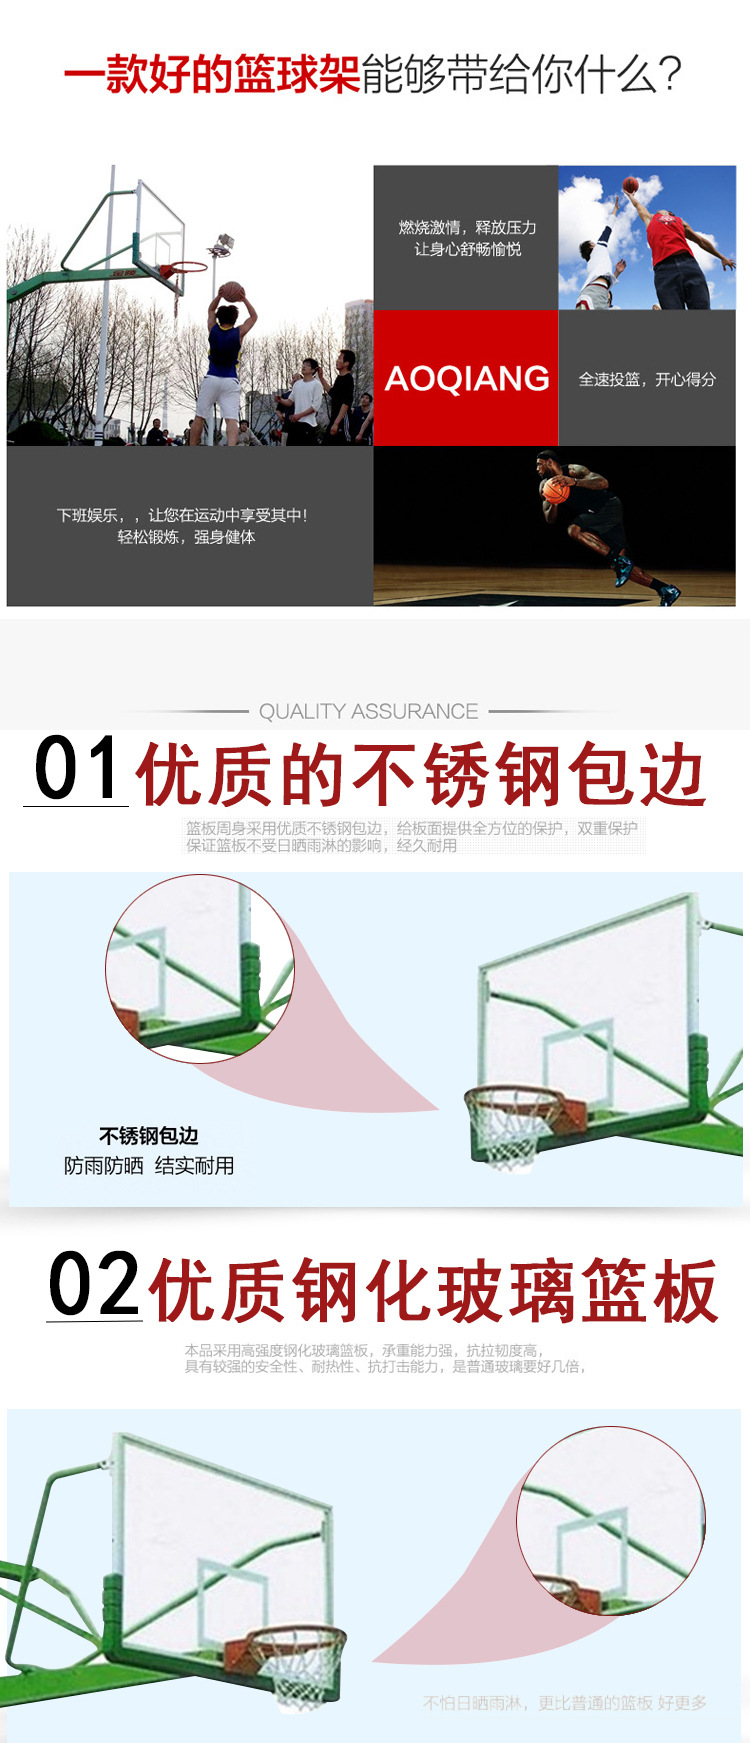 厂家生产固定式地埋丁字篮球架体育器材学校小区公园固定式篮球架示例图3